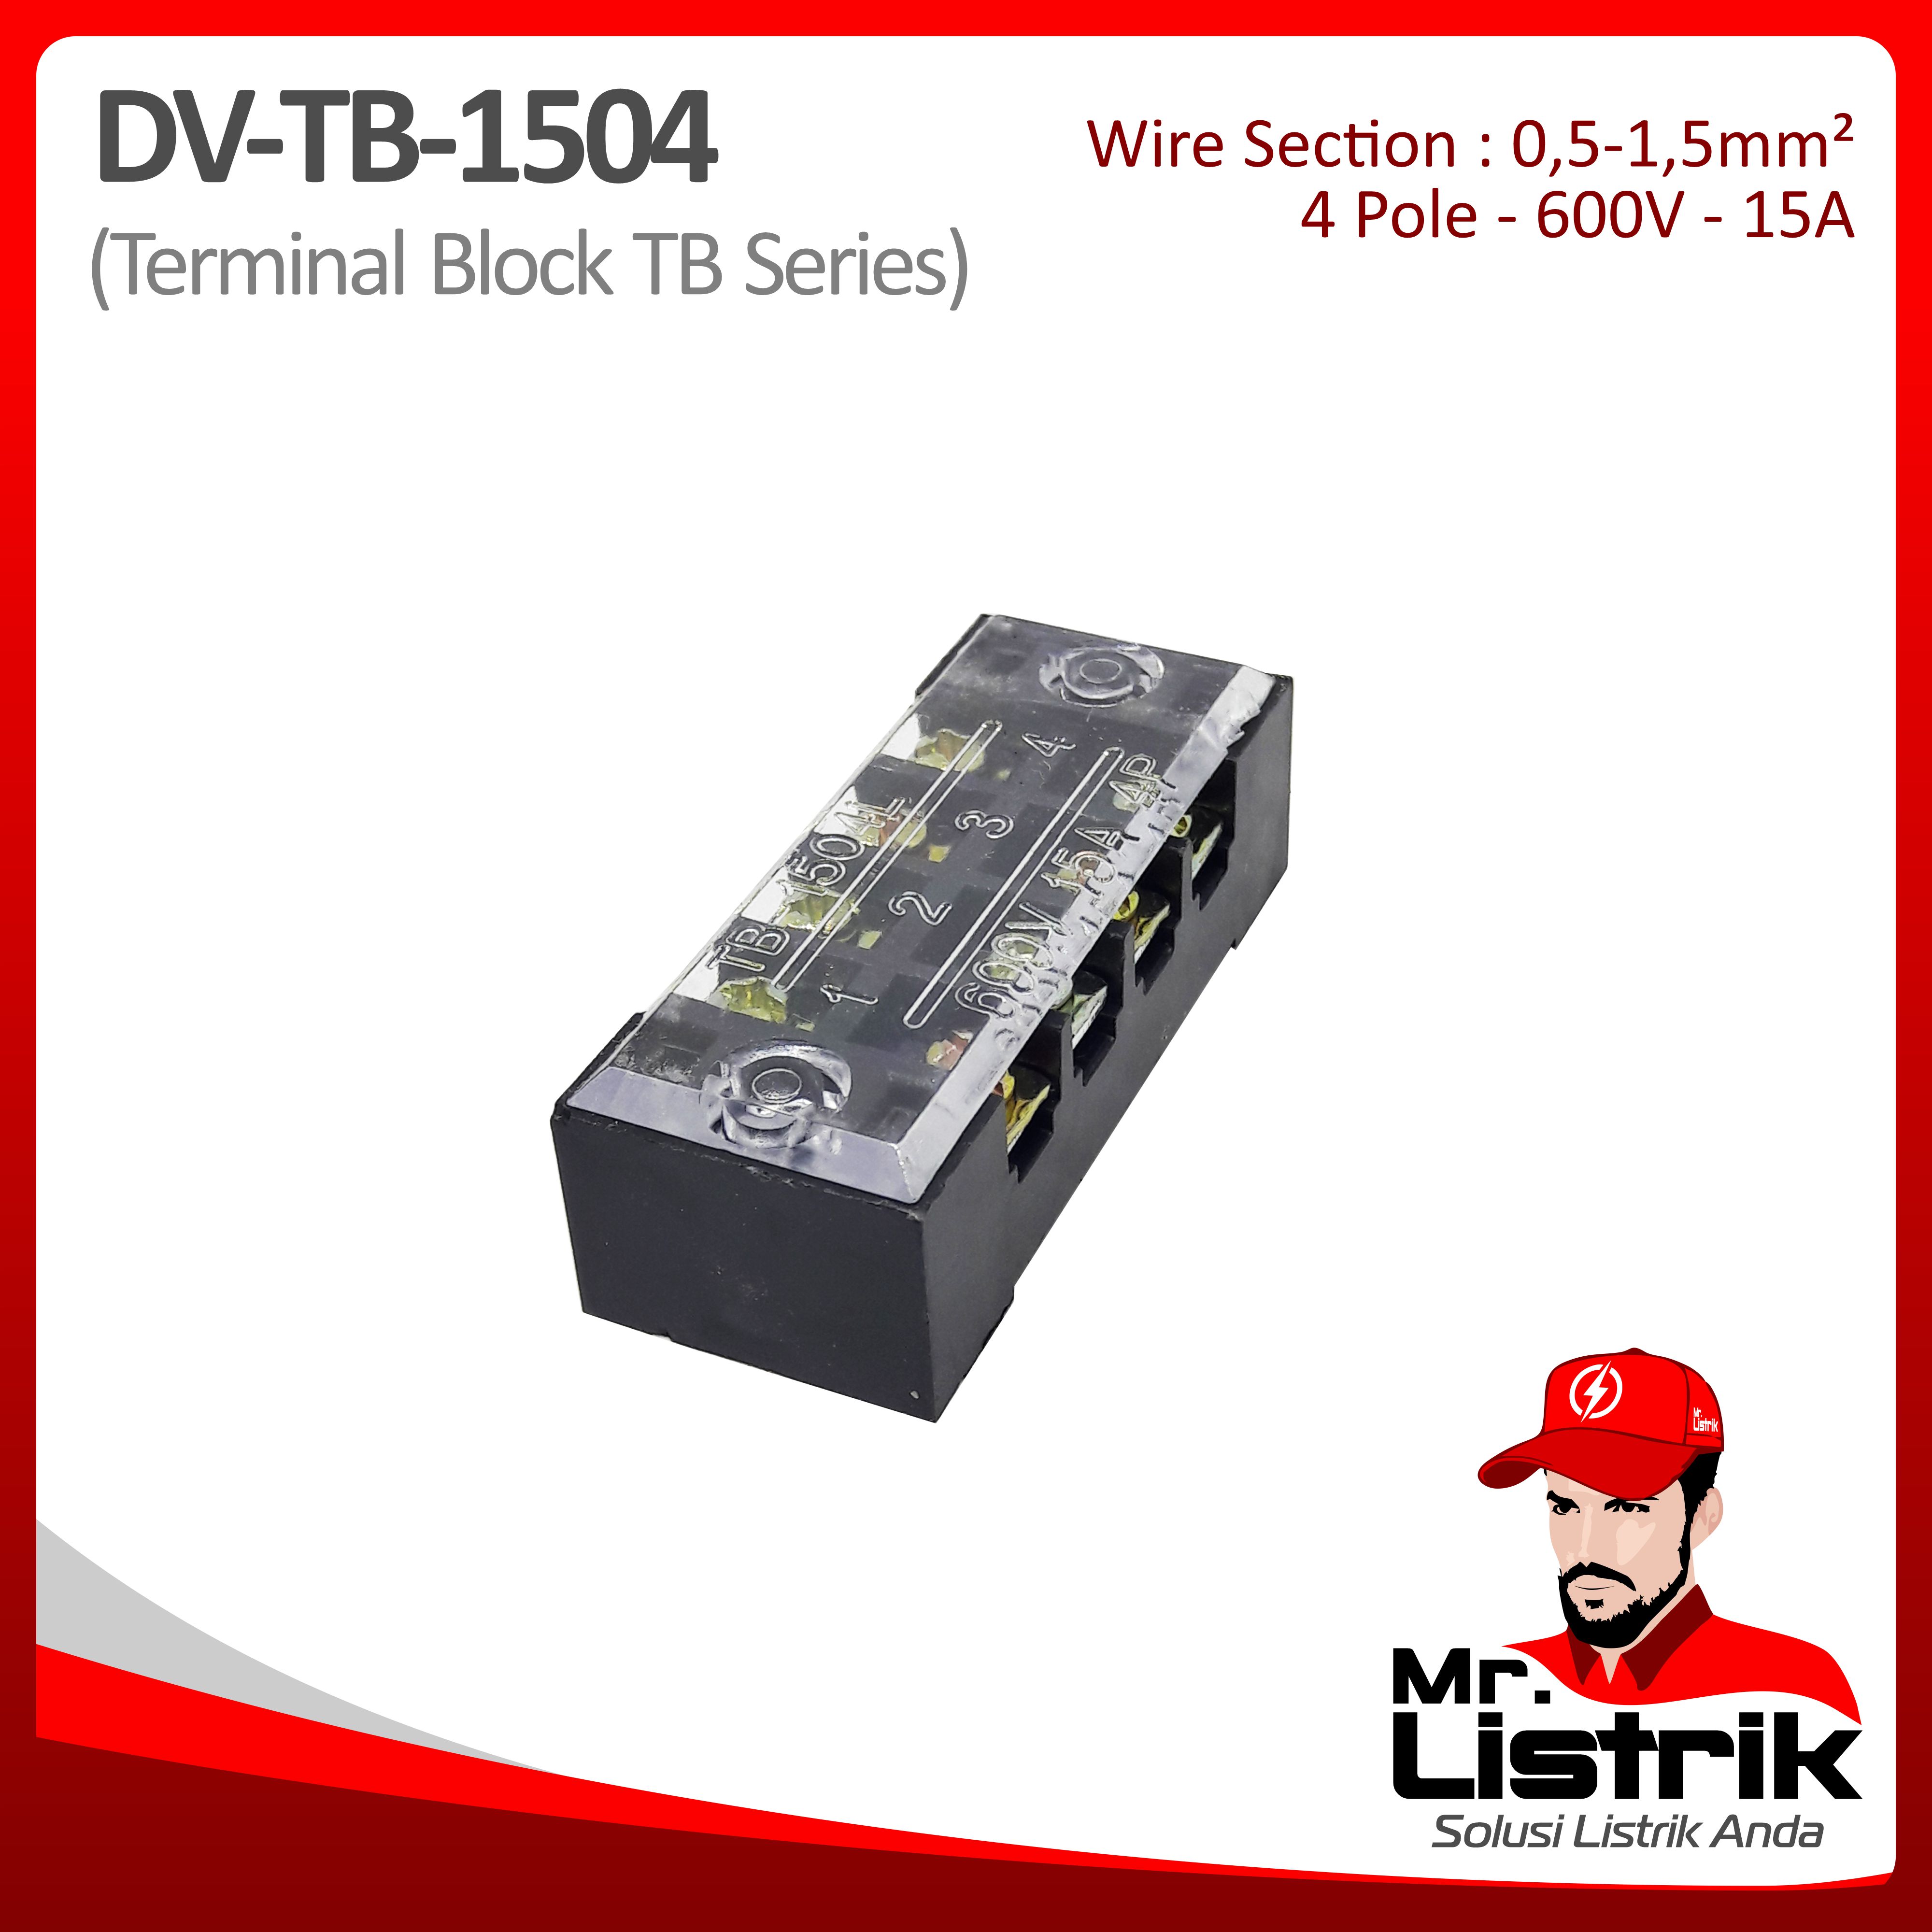 Terminal Block TB Series 4P 15A DV TB-1504